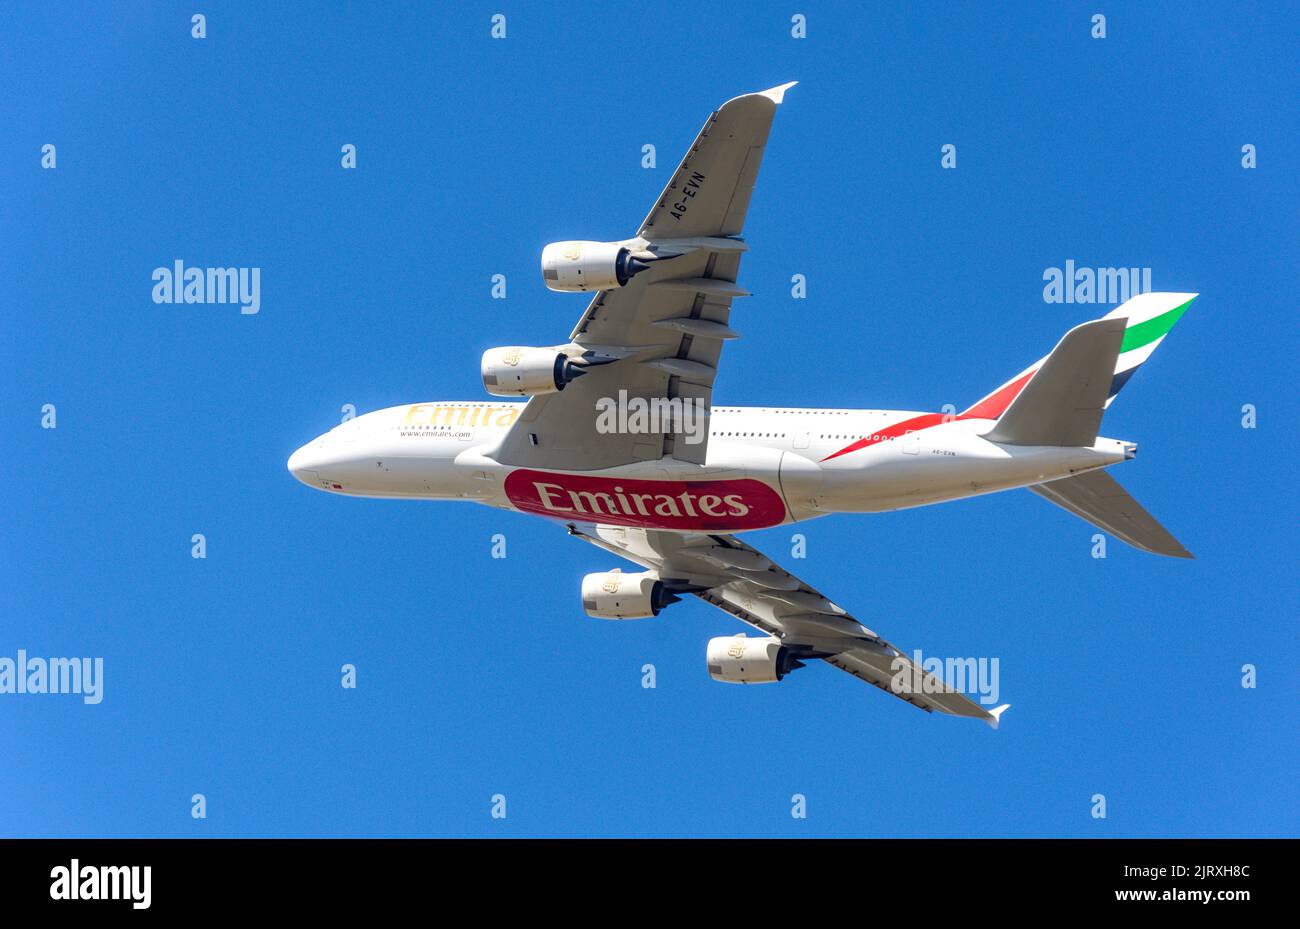 Emirates Airbus A380-842 décollage de l'aéroport de Heathrow, Grand Londres, Angleterre, Royaume-Uni Banque D'Images